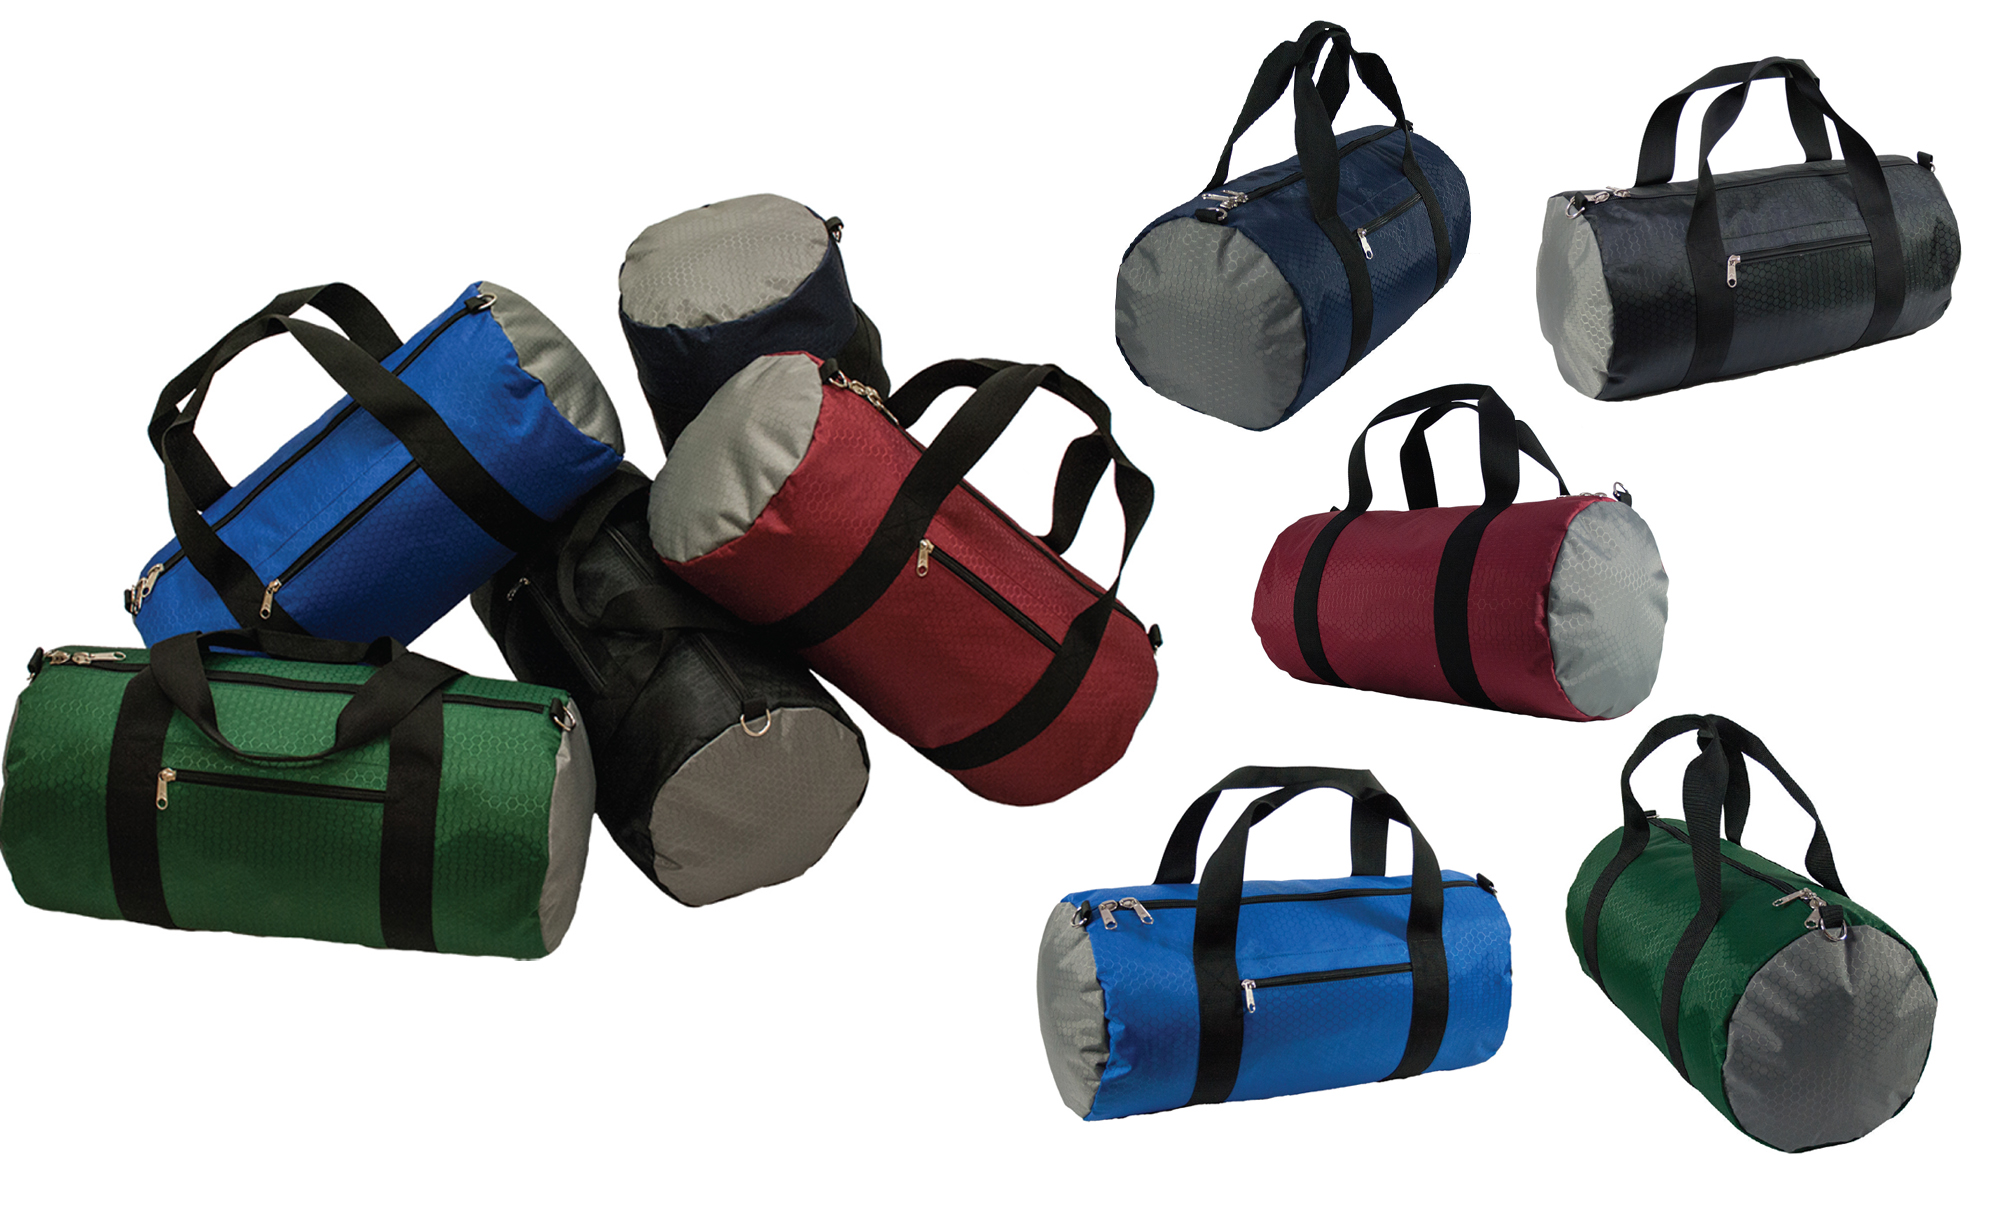 Rainbow Zebra Sports Gym Duffel Bag Travel Duffle Bag Sports Luggage Handbag for Men Women Girls Boys 